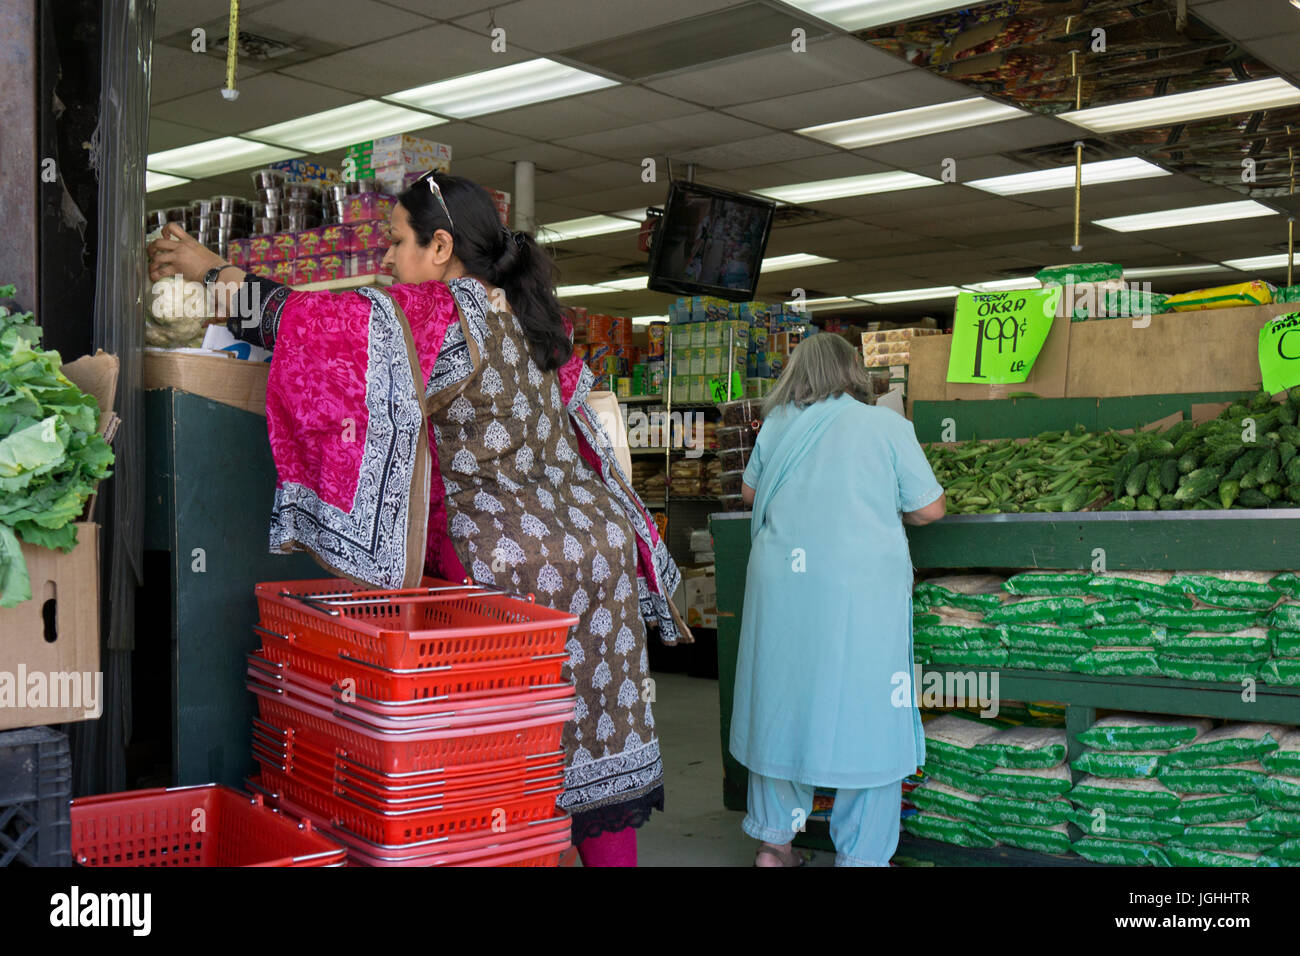 Zwei asiatischen Frauen in ethnische Mode shopping für Gemüse in einem Supermarkt an der 37th Avenue in Jackson Heights, Queens, New York City. Stockfoto